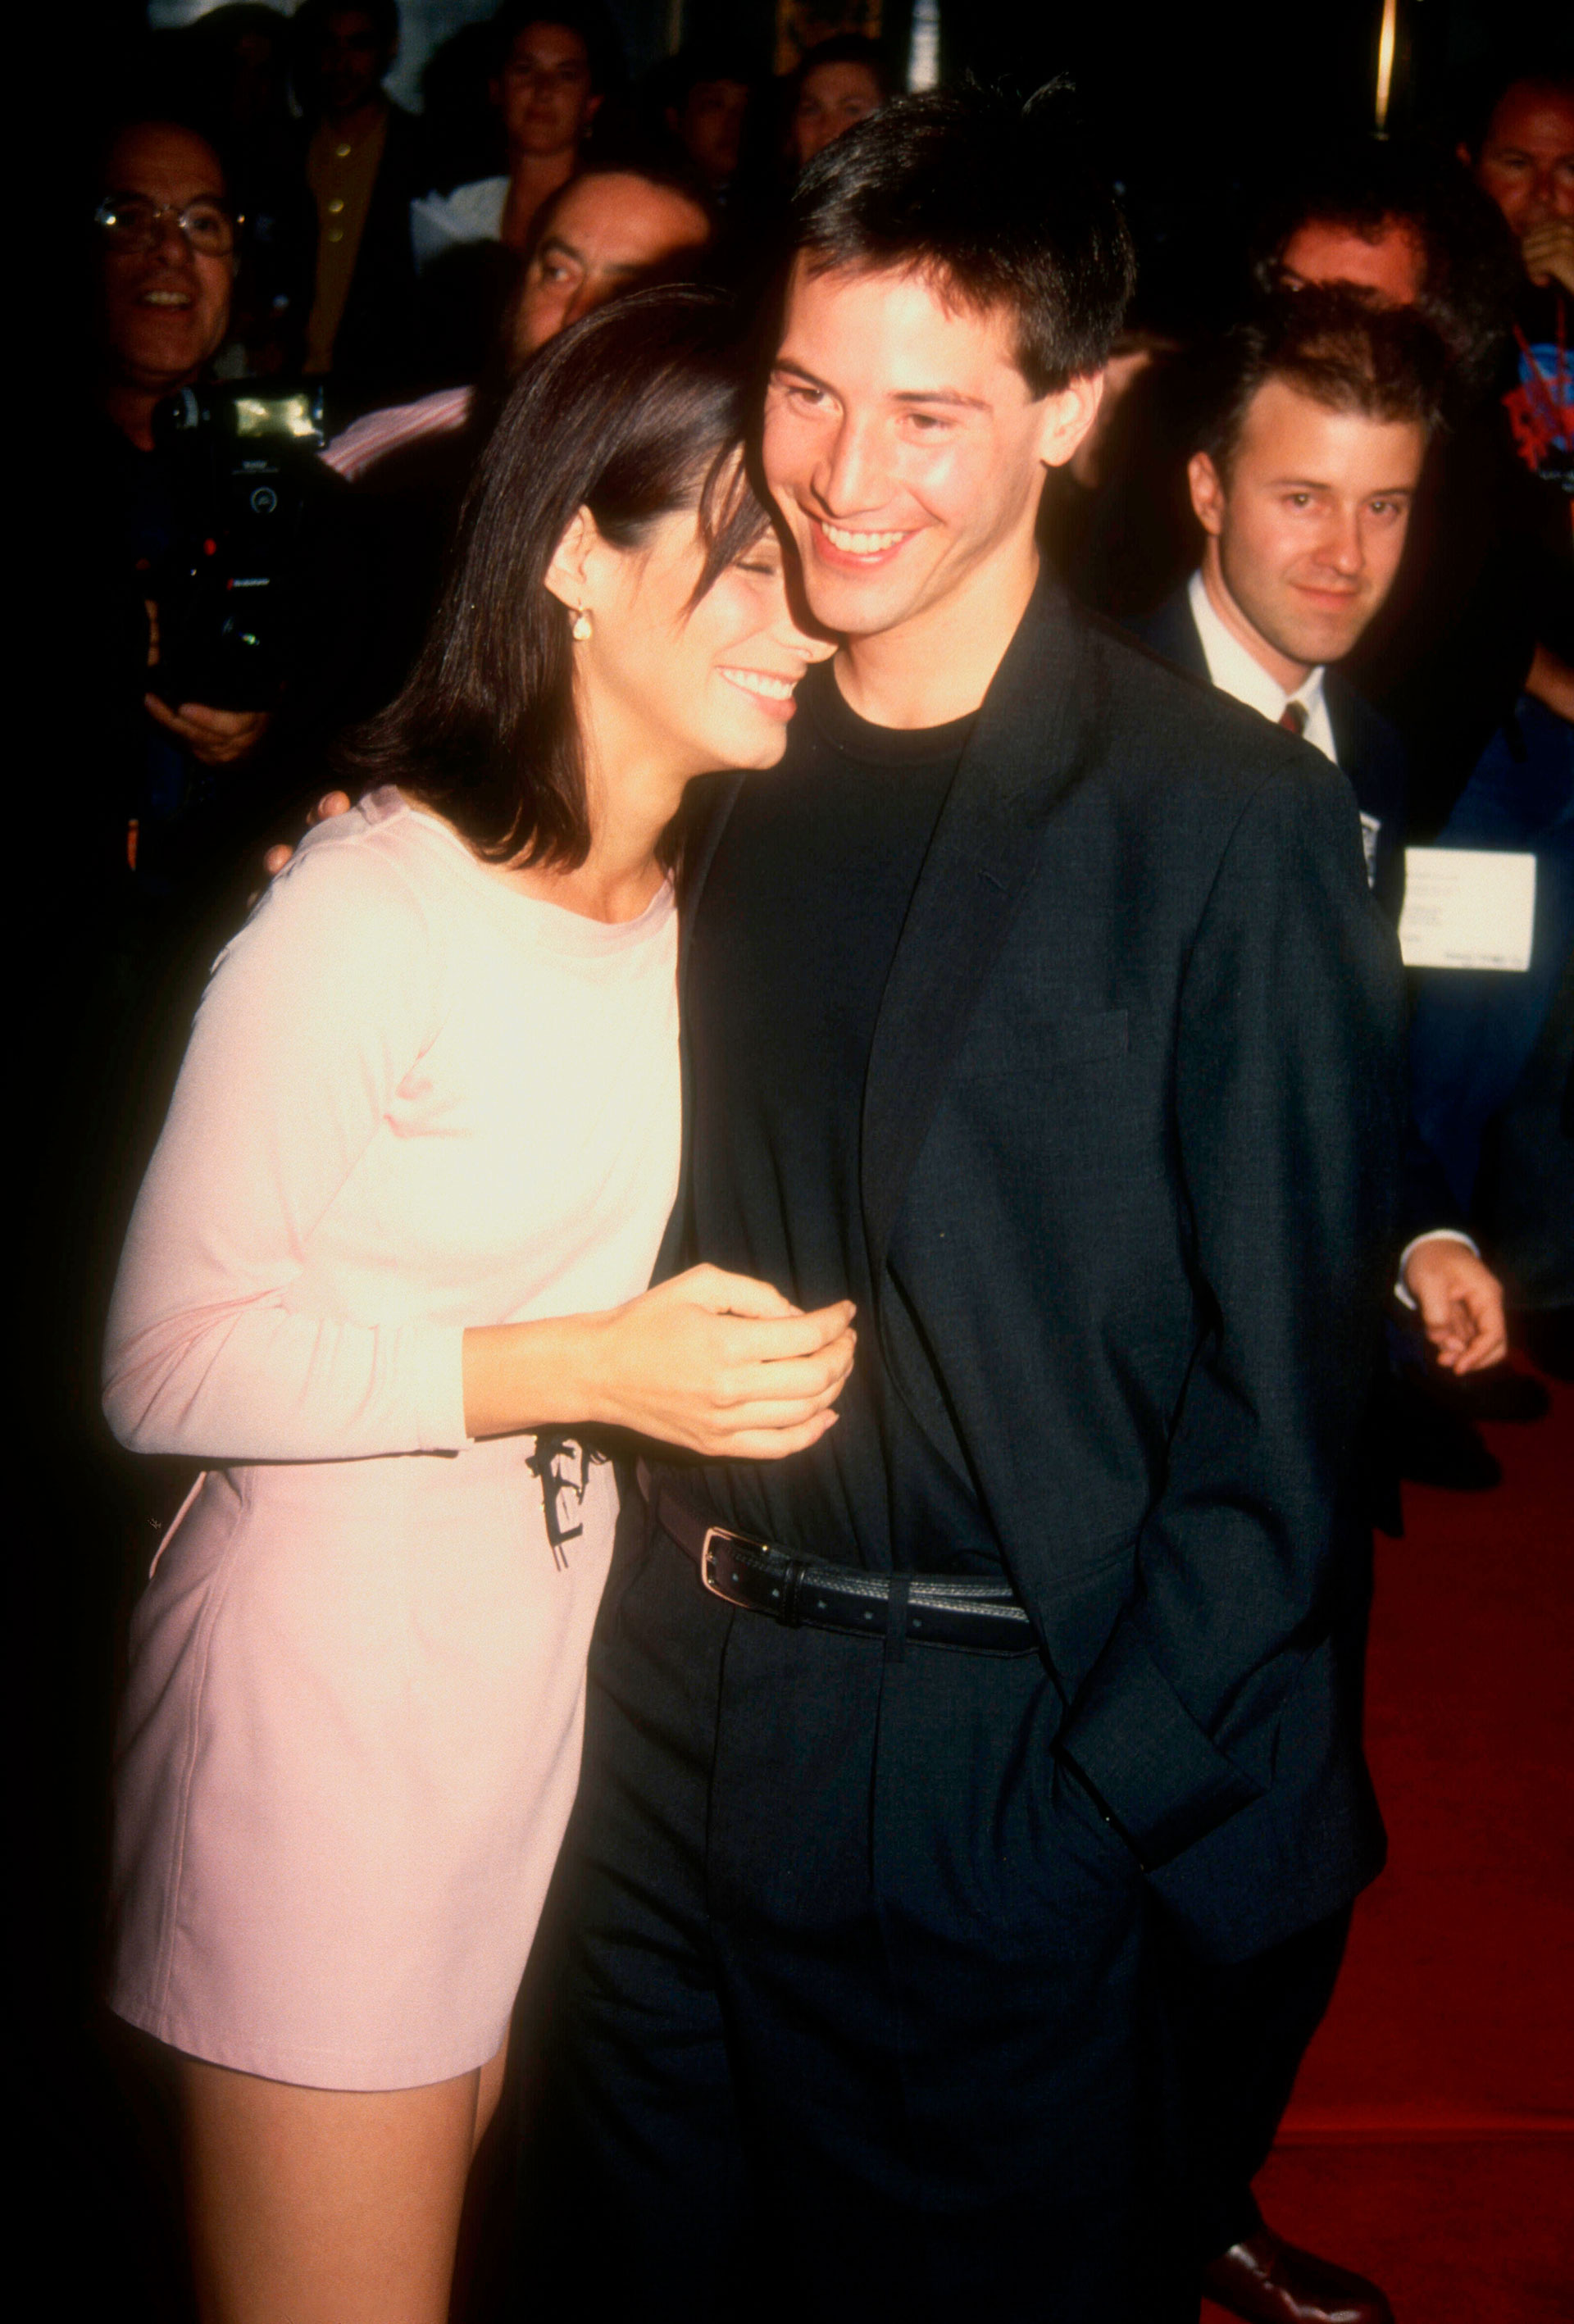  Sandra Bullock y Keanu Reeves en la premiere de "Speed" en 1994 (Grosby Group)